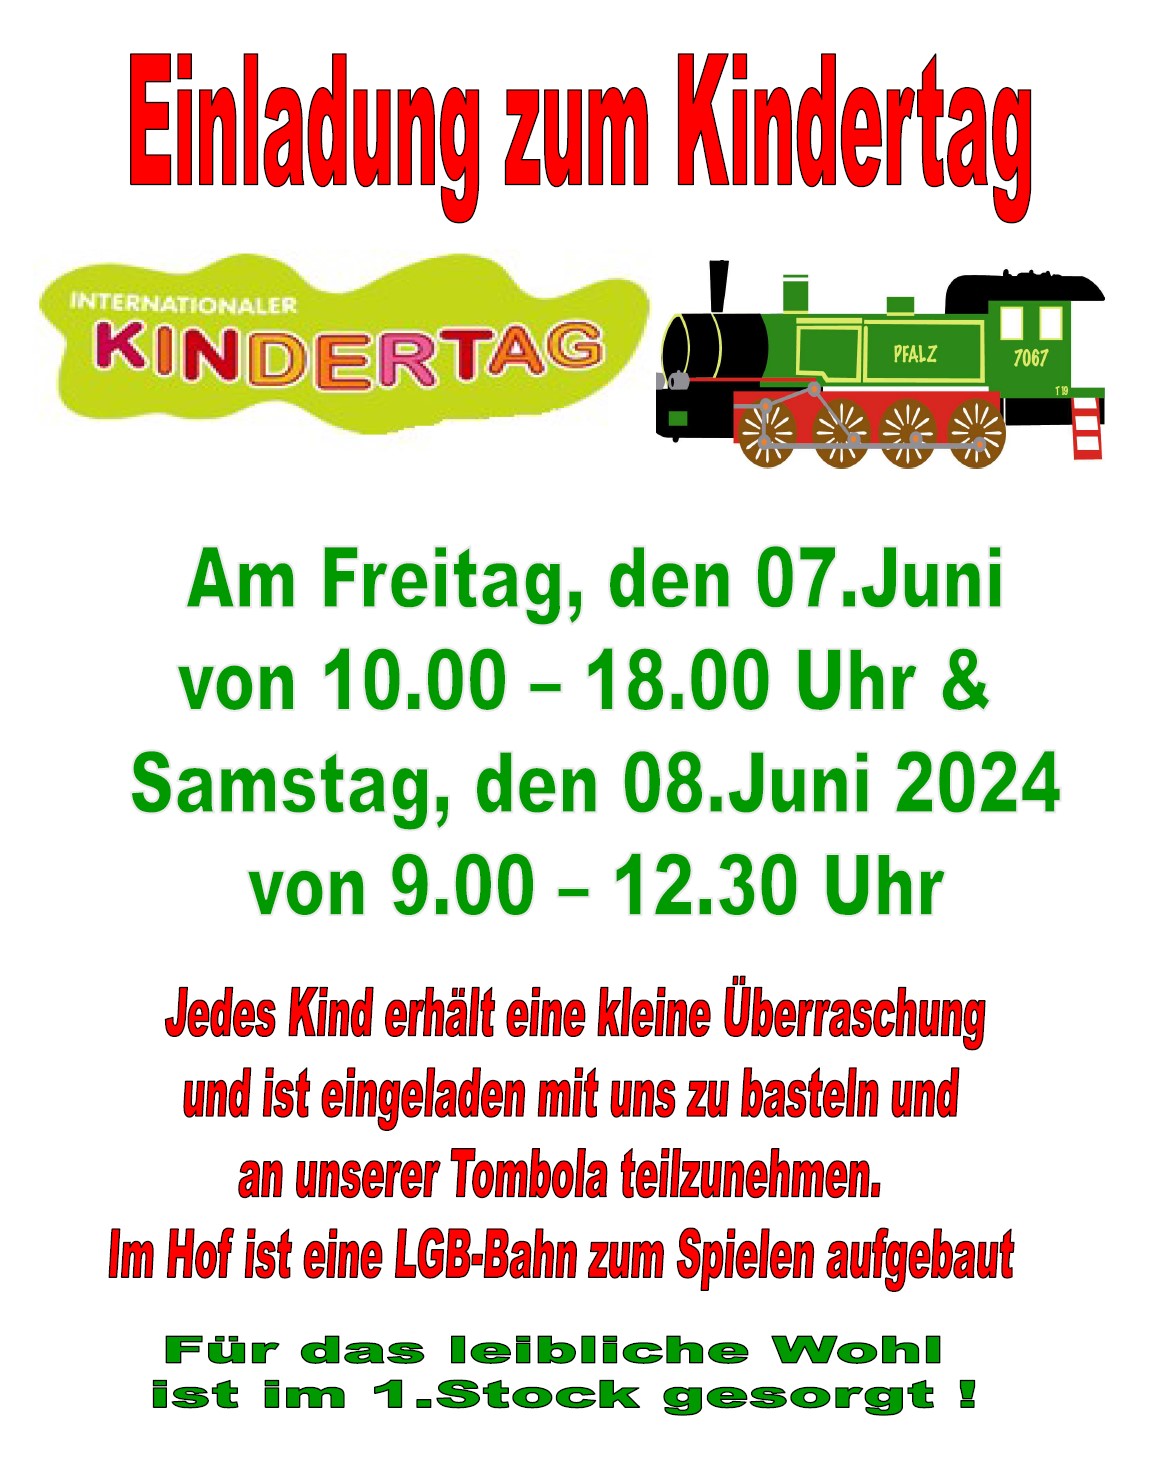 Theis-Modellbahn Mainz lädt ein zum internationalen Kindertag am 7. und 8. Juni 2024 mit Tombola, Basteln und Überraschung.